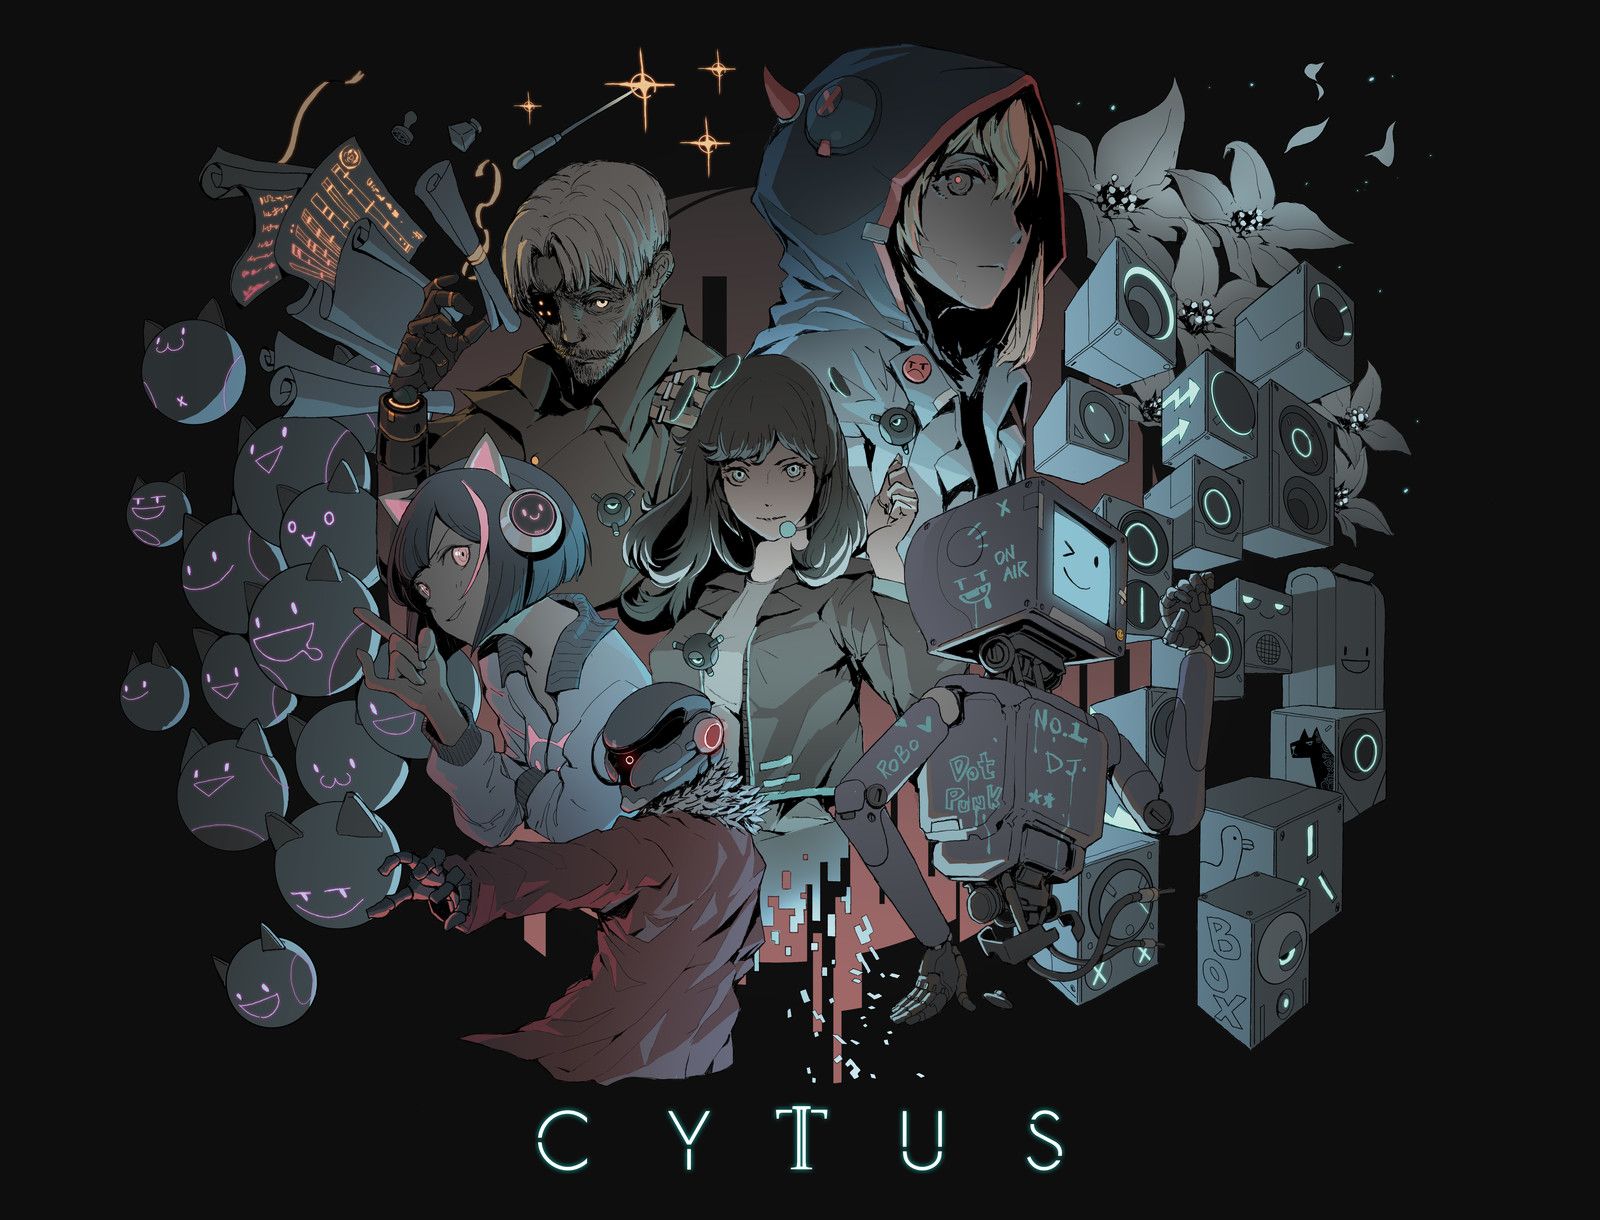 Cytus Ii, Ching Yeh - Cytus Ii , HD Wallpaper & Backgrounds